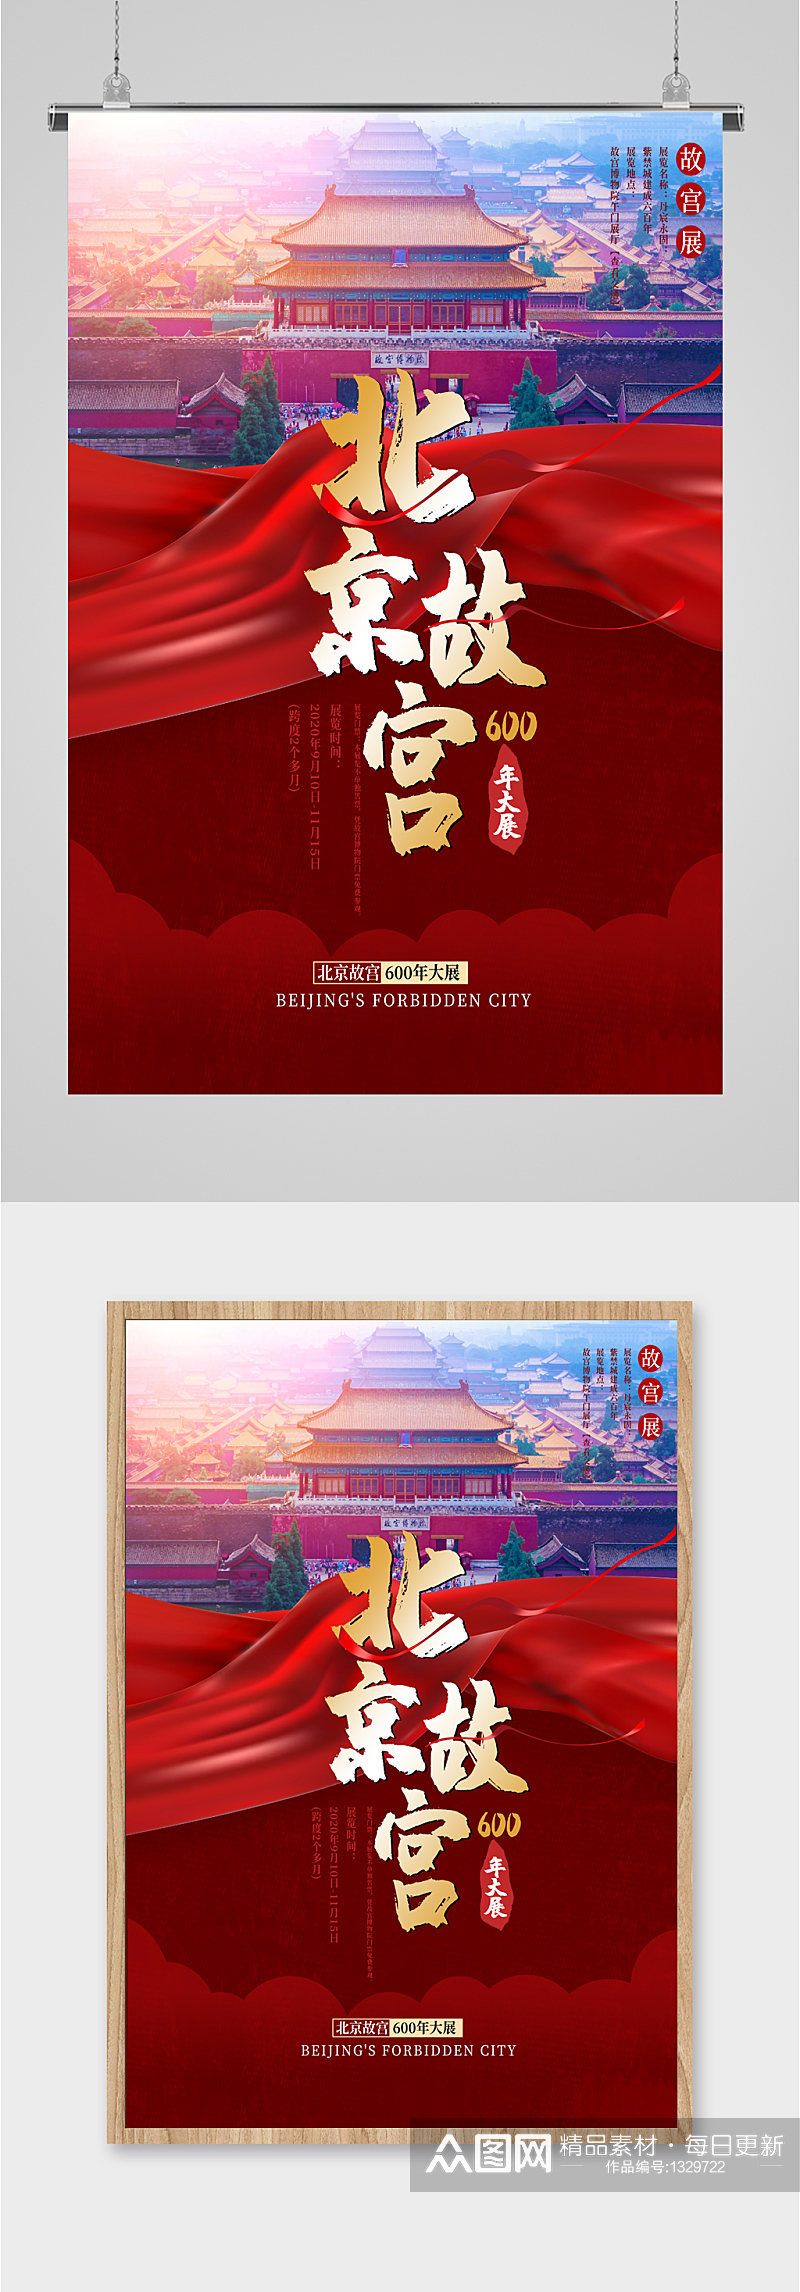 北京故宫宣传海报素材